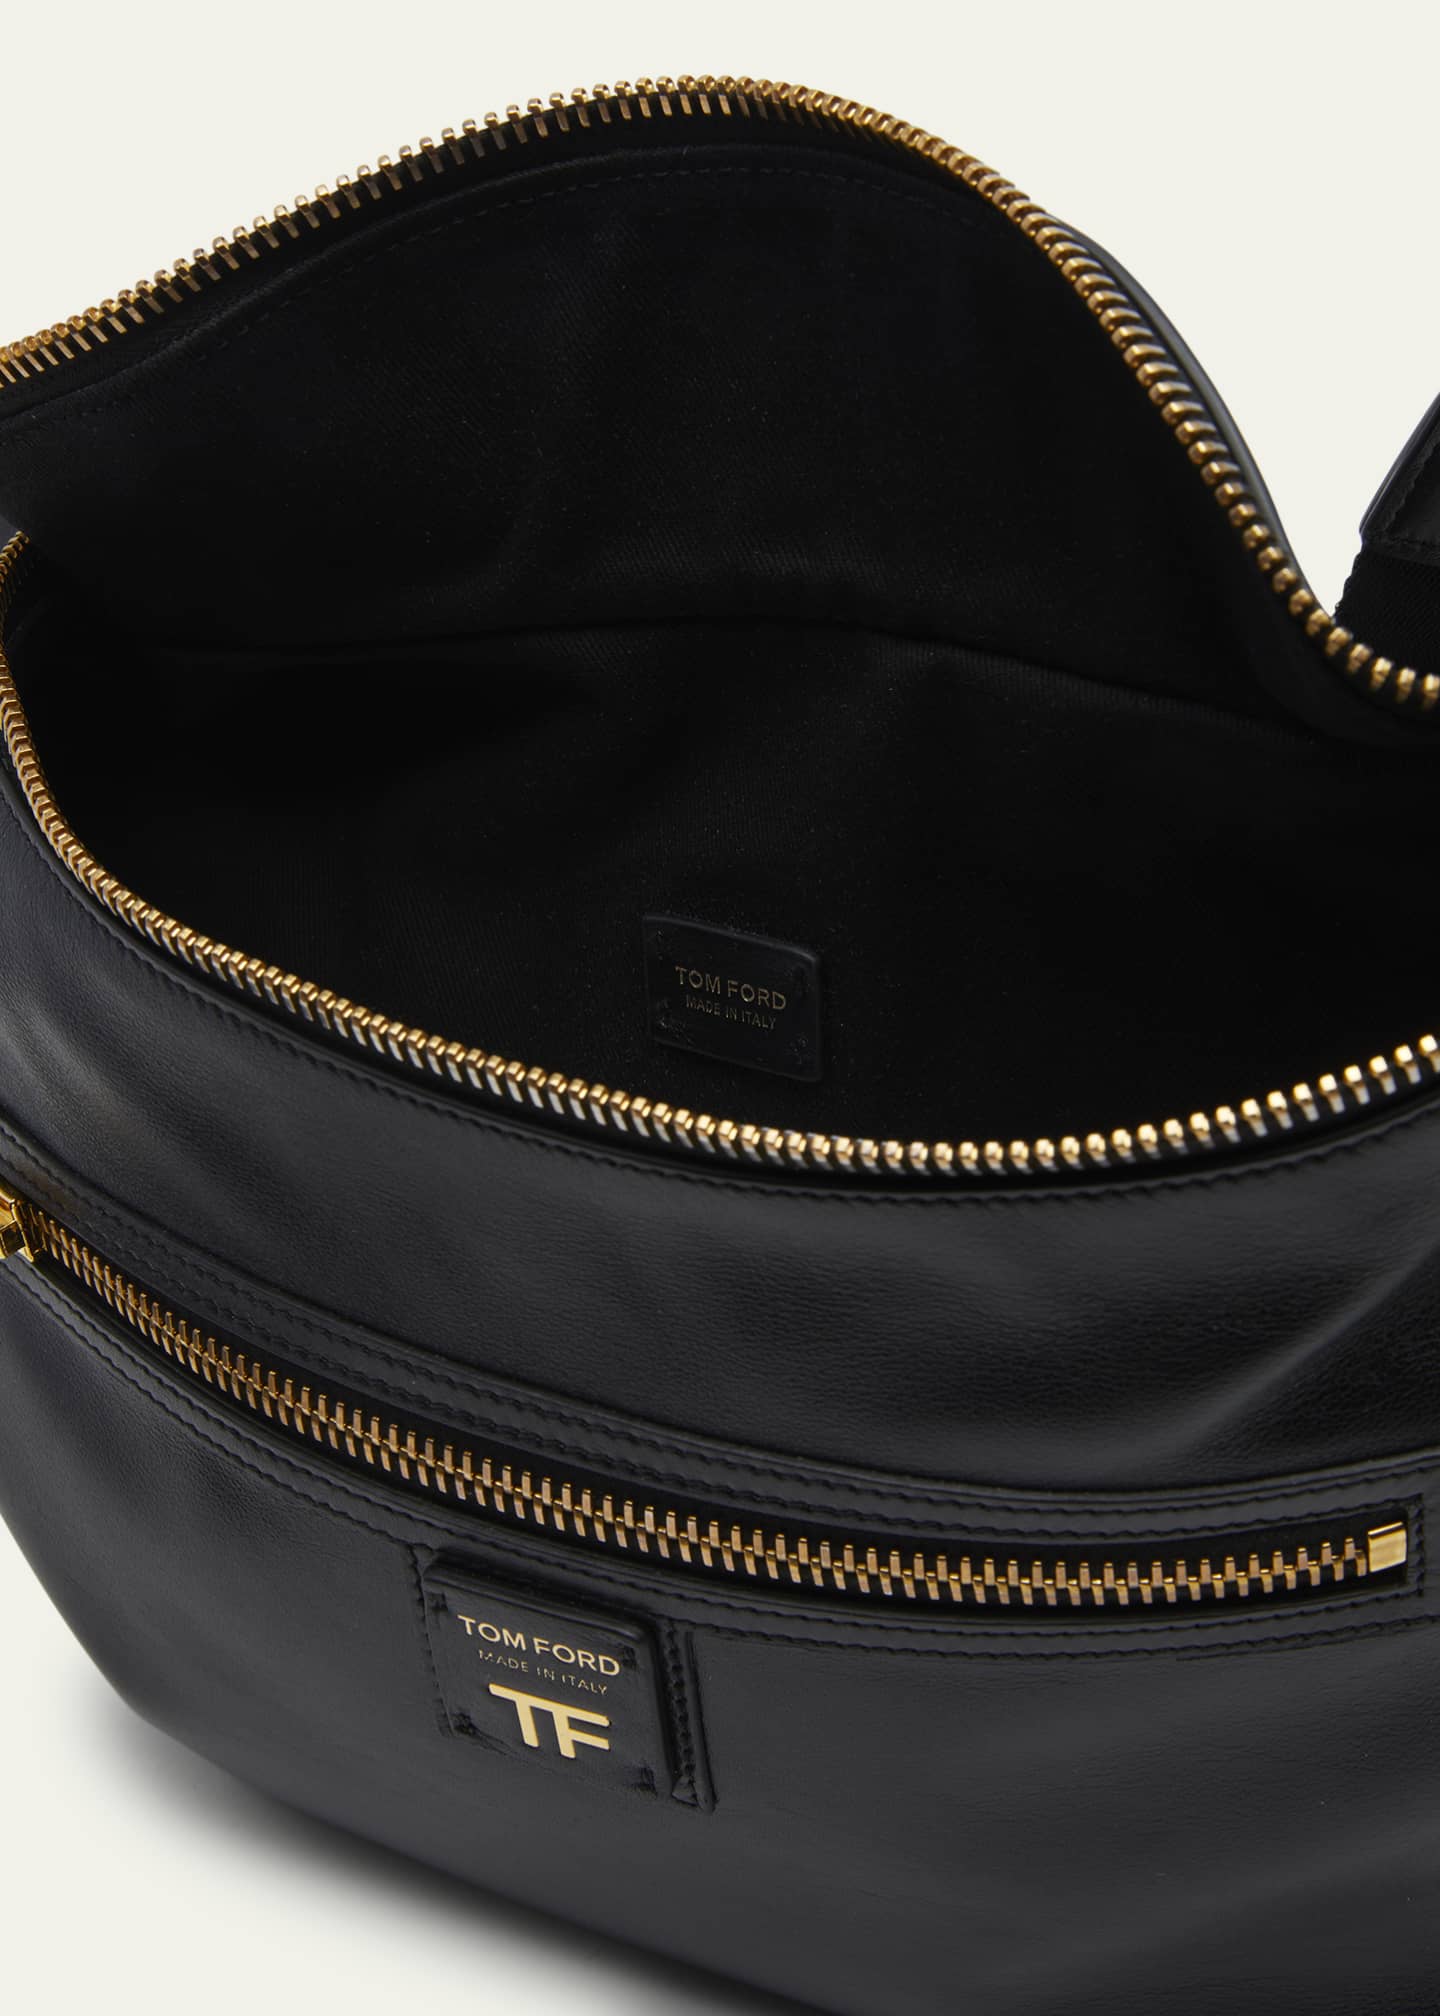 TOM FORD Sling Zip Leather Shoulder Bag - Bergdorf Goodman